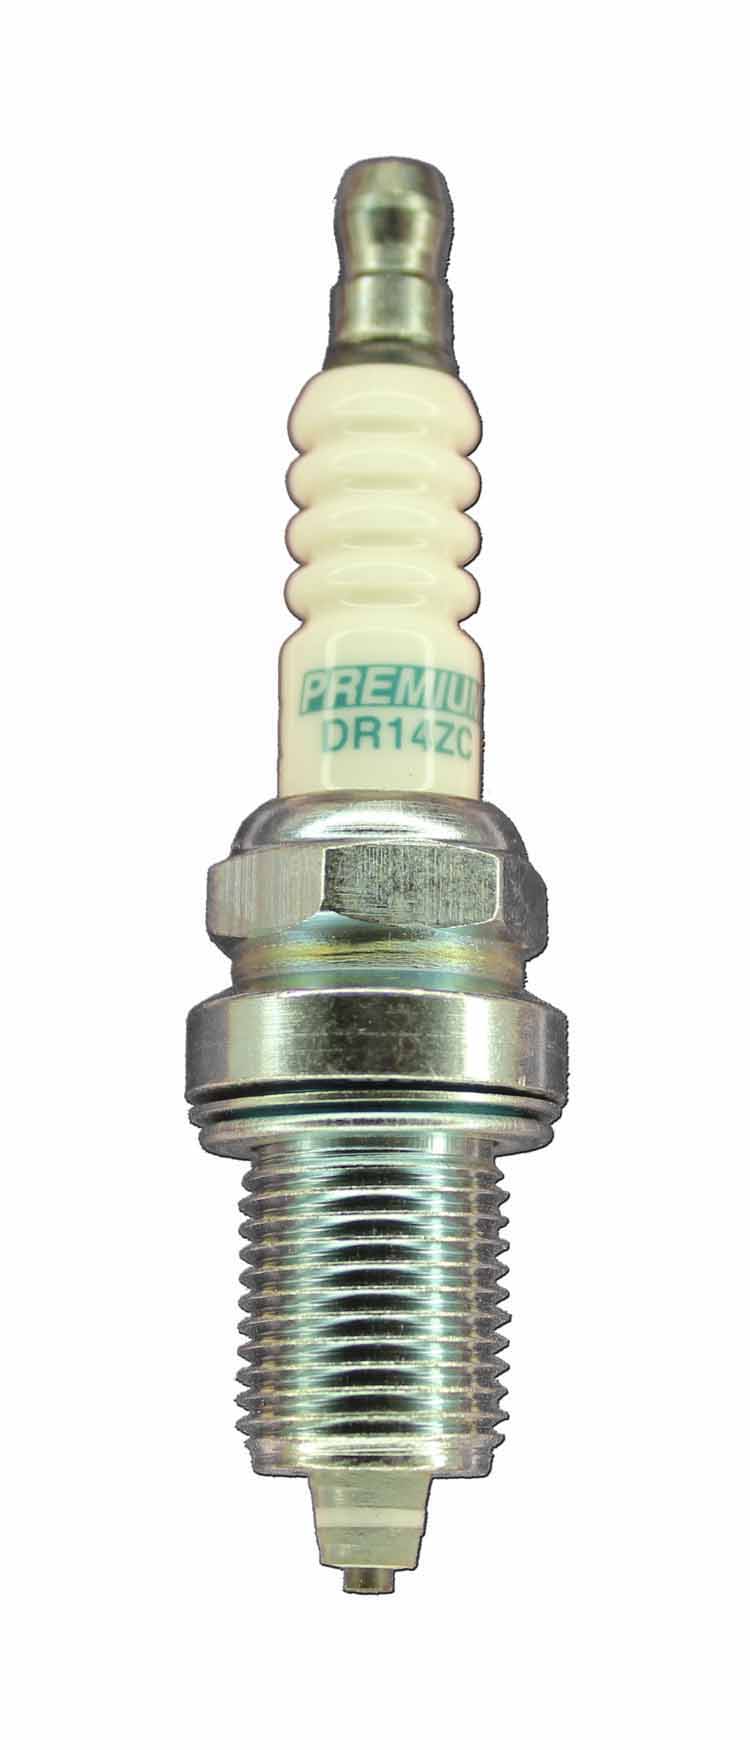 DR14ZC Spark Plug